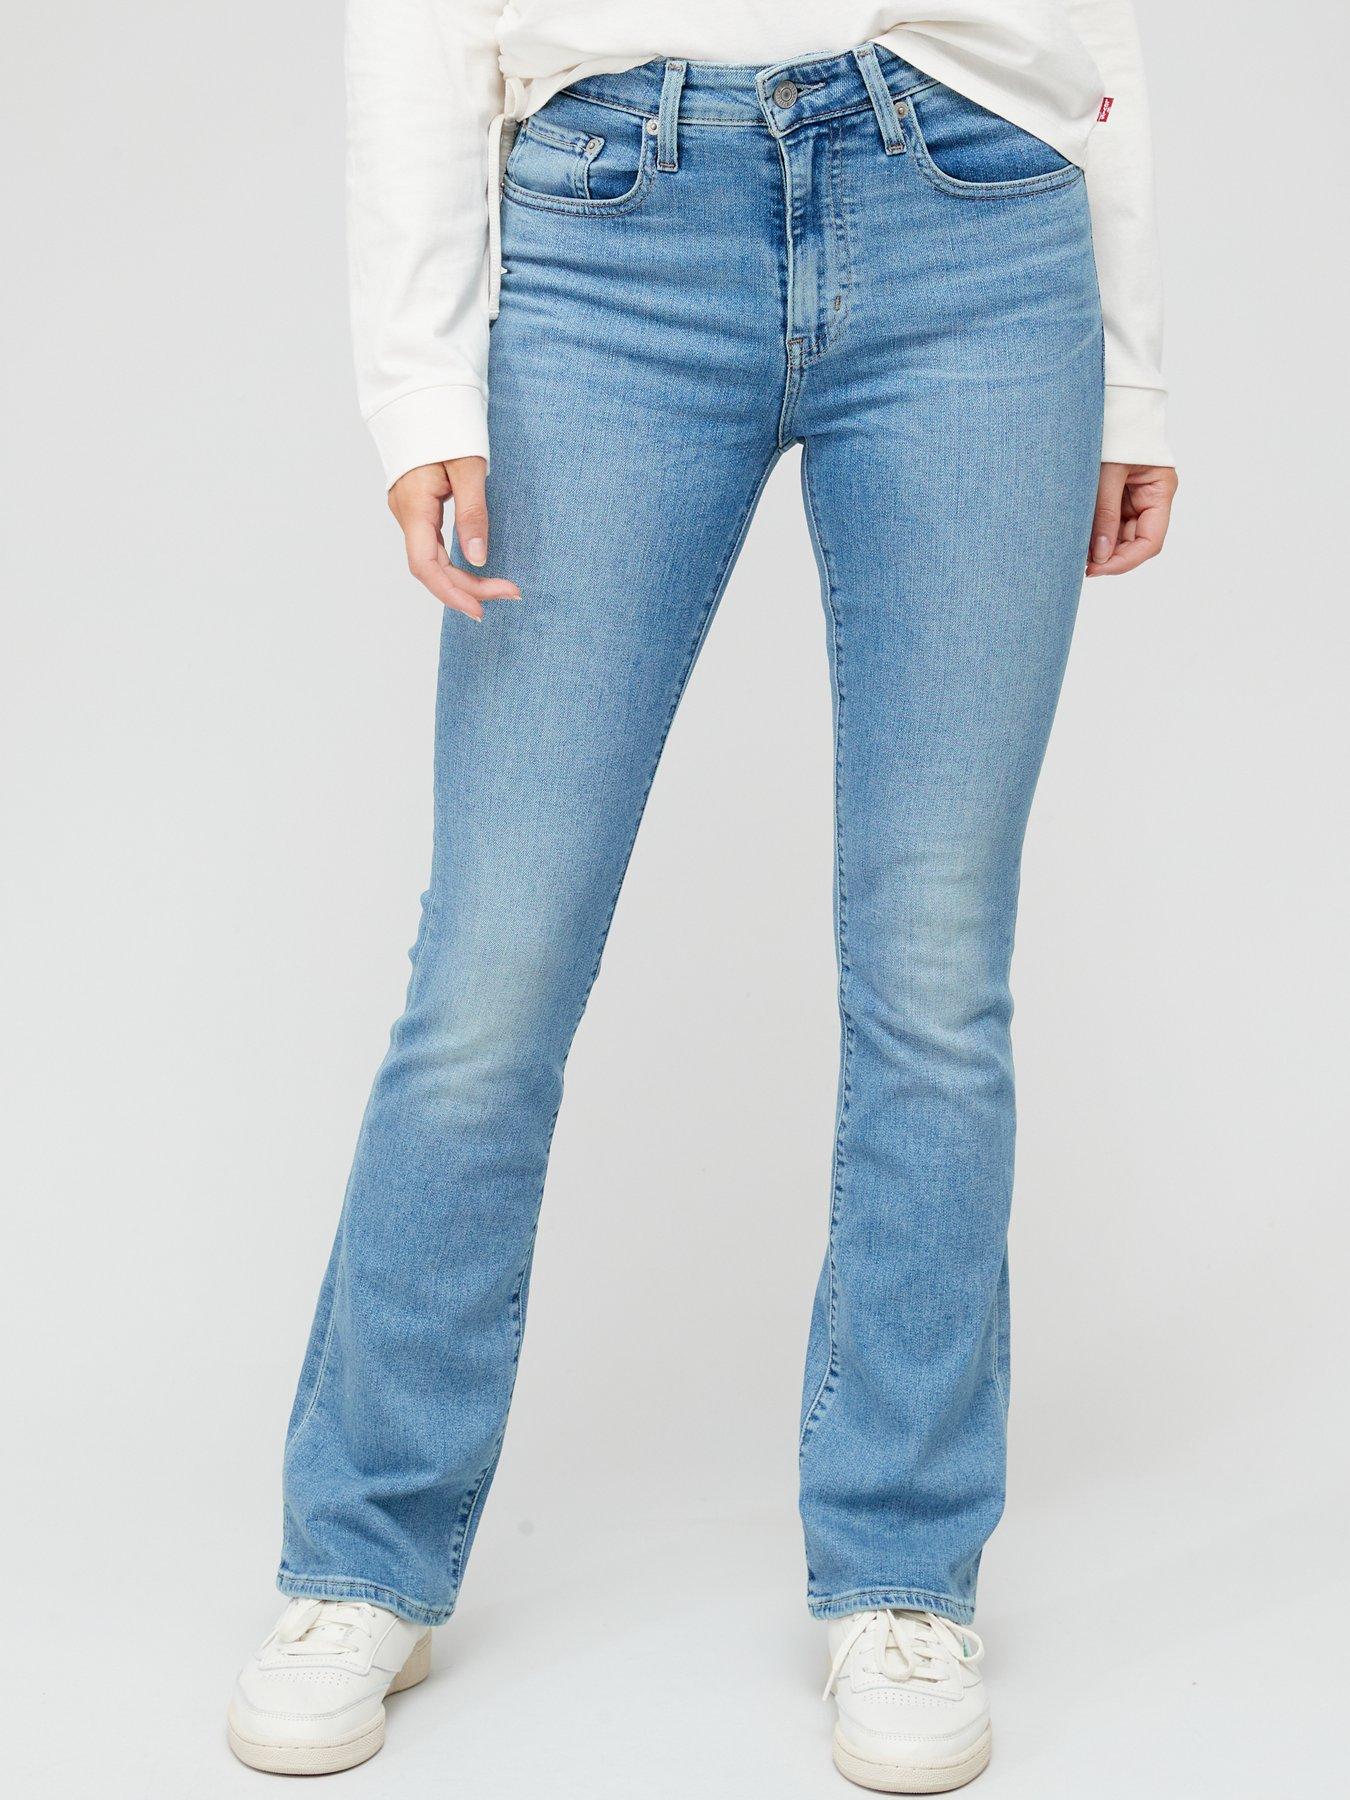 Levi's Women's 415 Plus Size Classic Boot Cut Jeans